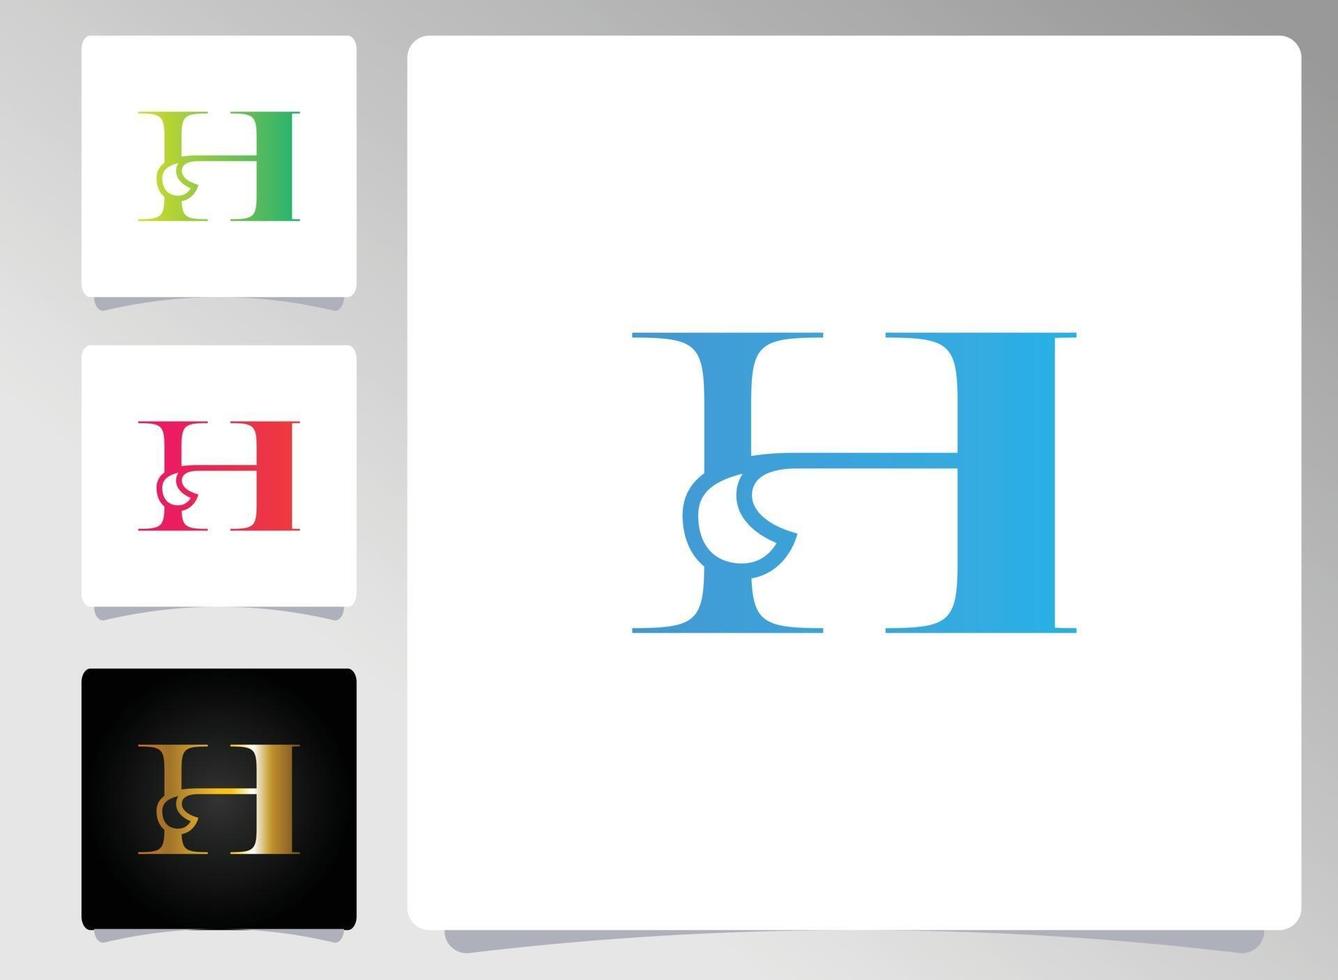 conception abstraite de logo de lettre h vecteur